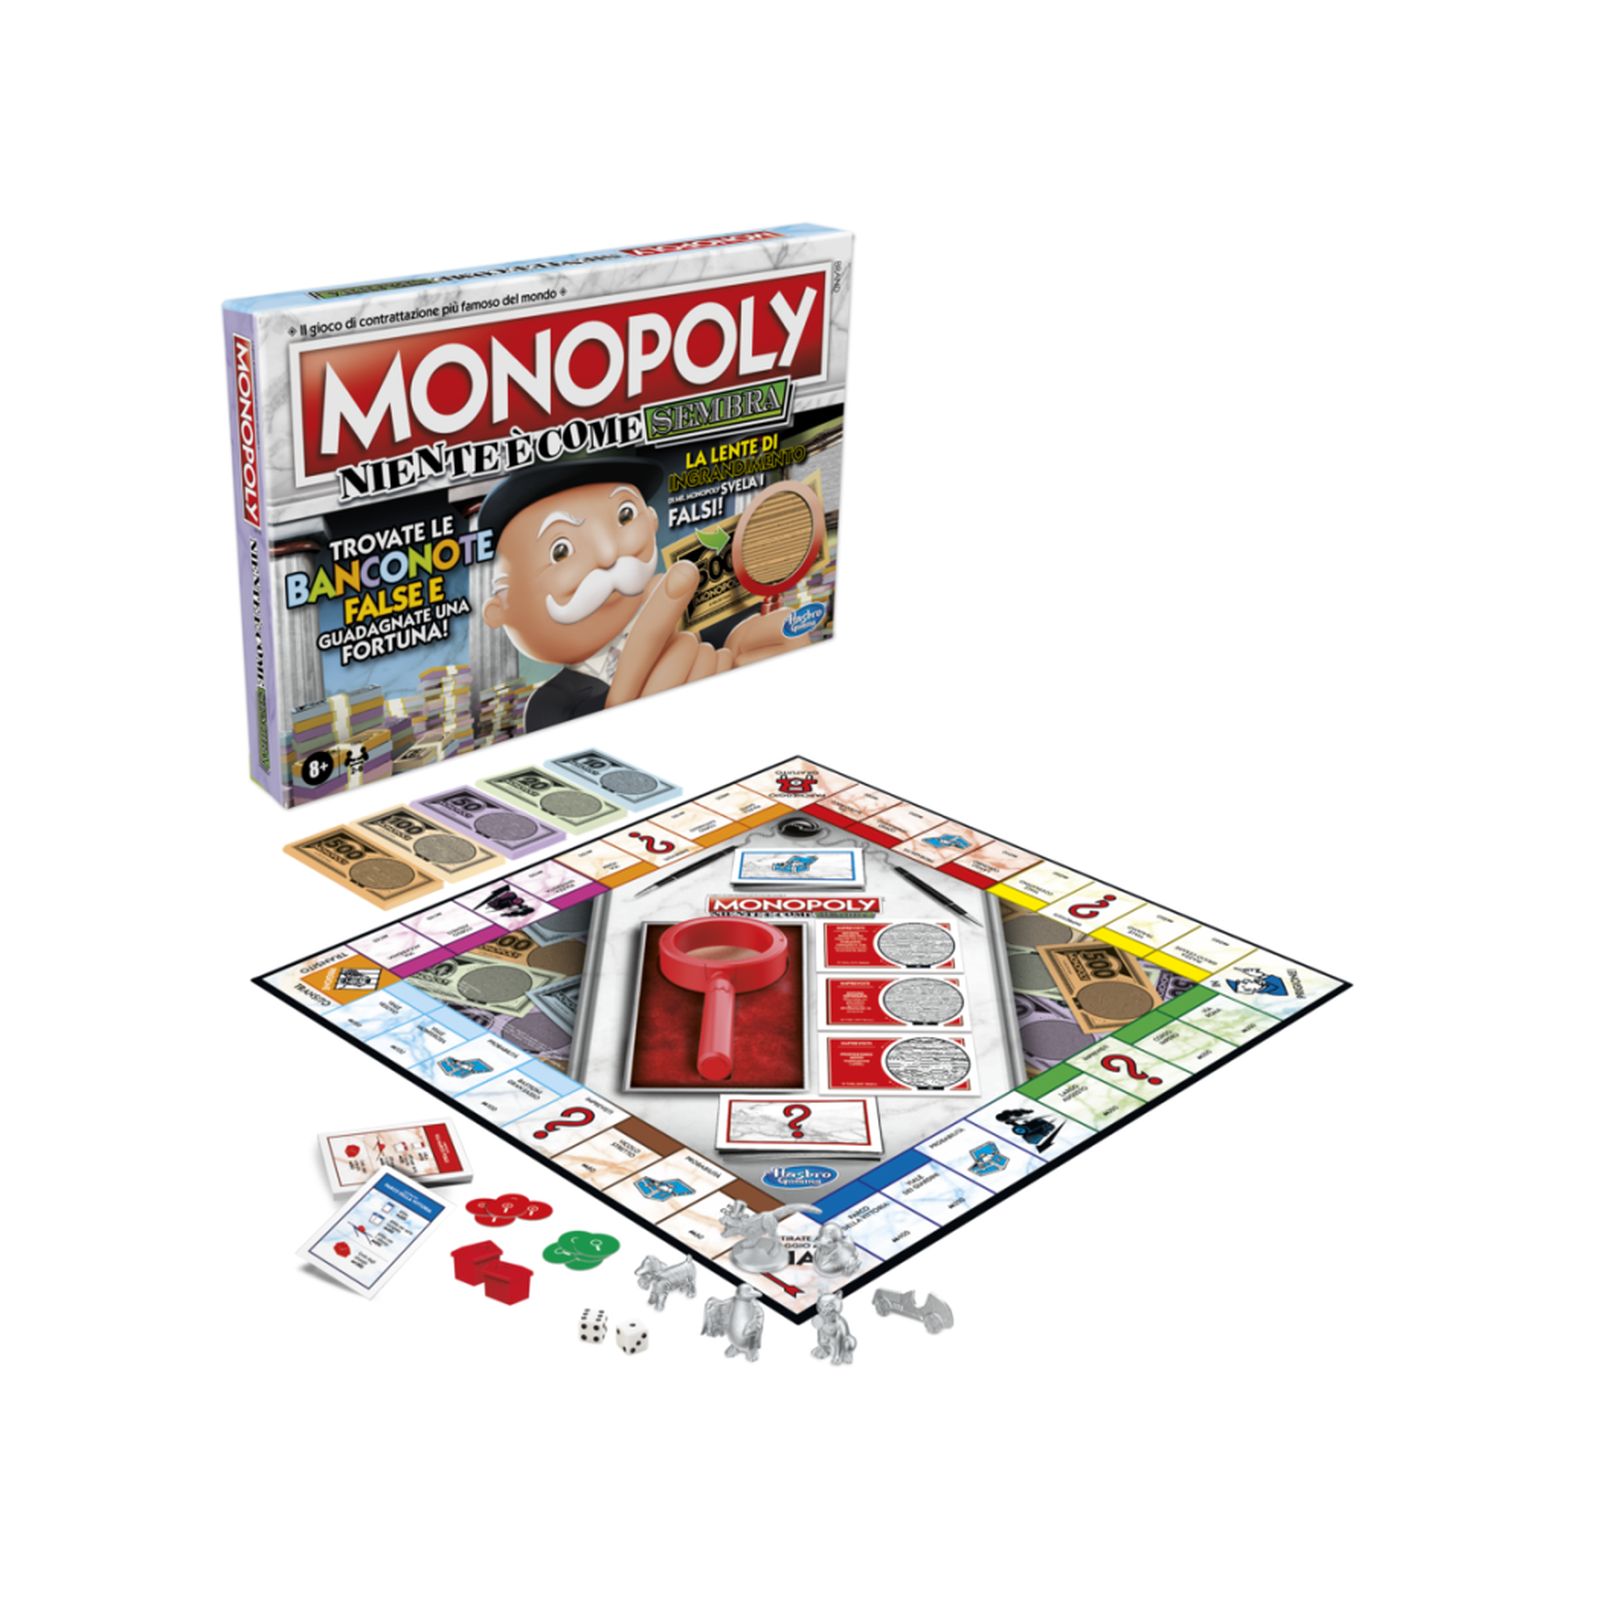 Monopoly niente è come sembra - MONOPOLY